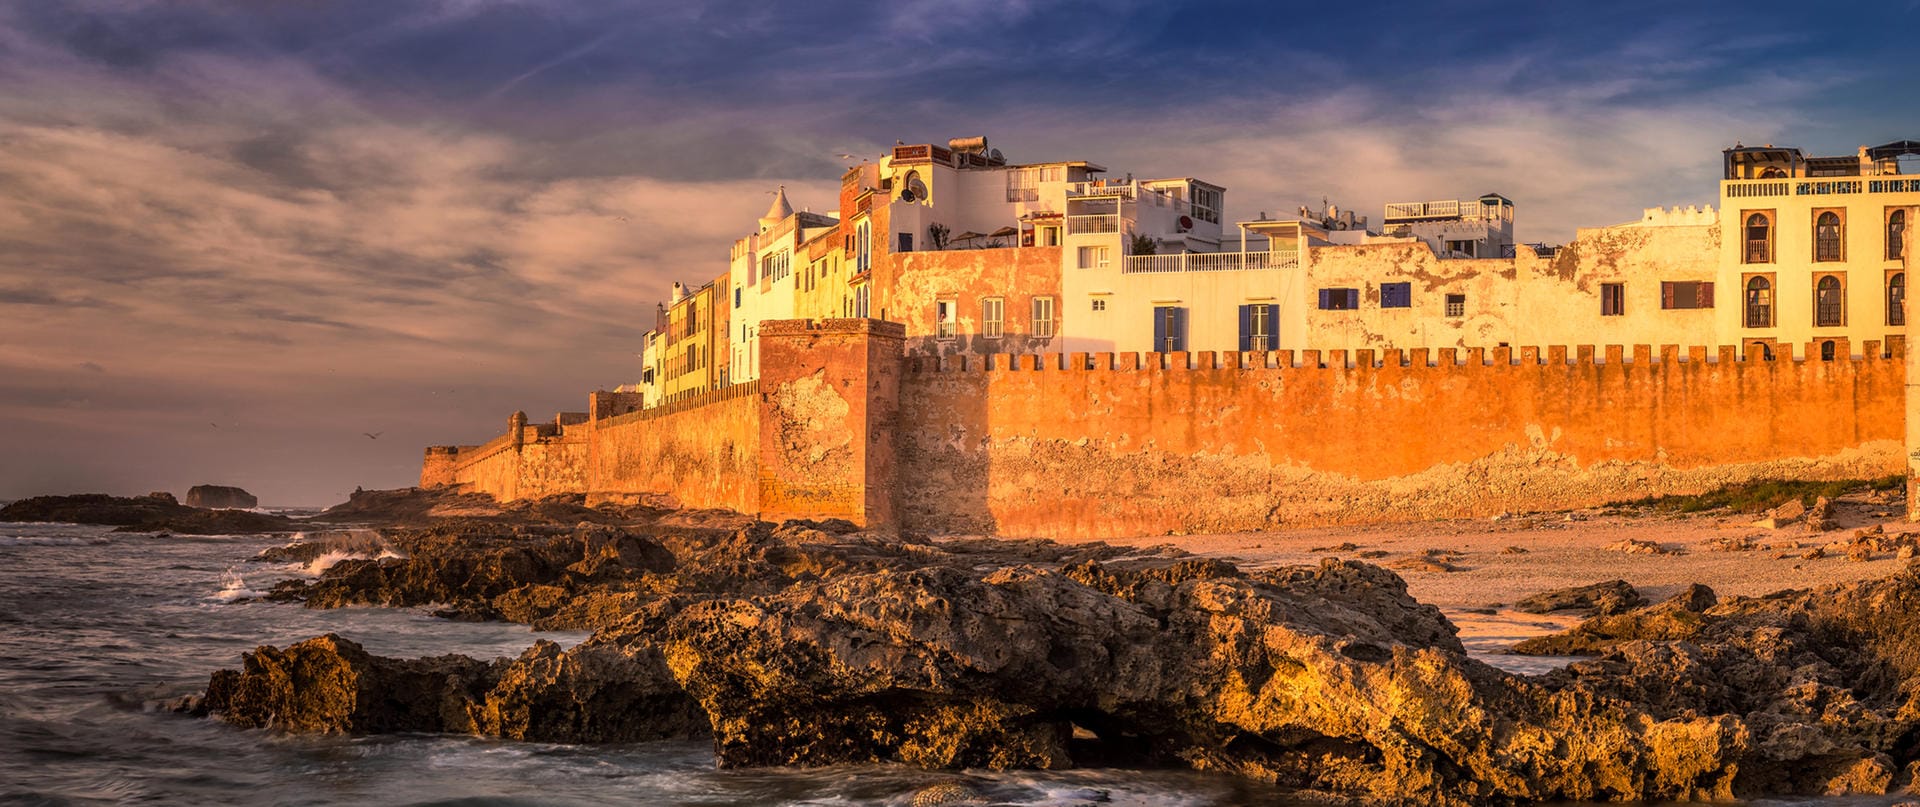 Essaouira: In Marokko können Fans von "Game of Thrones" den Ort besuchen, an dem Daenerys Targaryen in der Serie Menschen aus den Fängen eines Sklavenhändlers befreite.